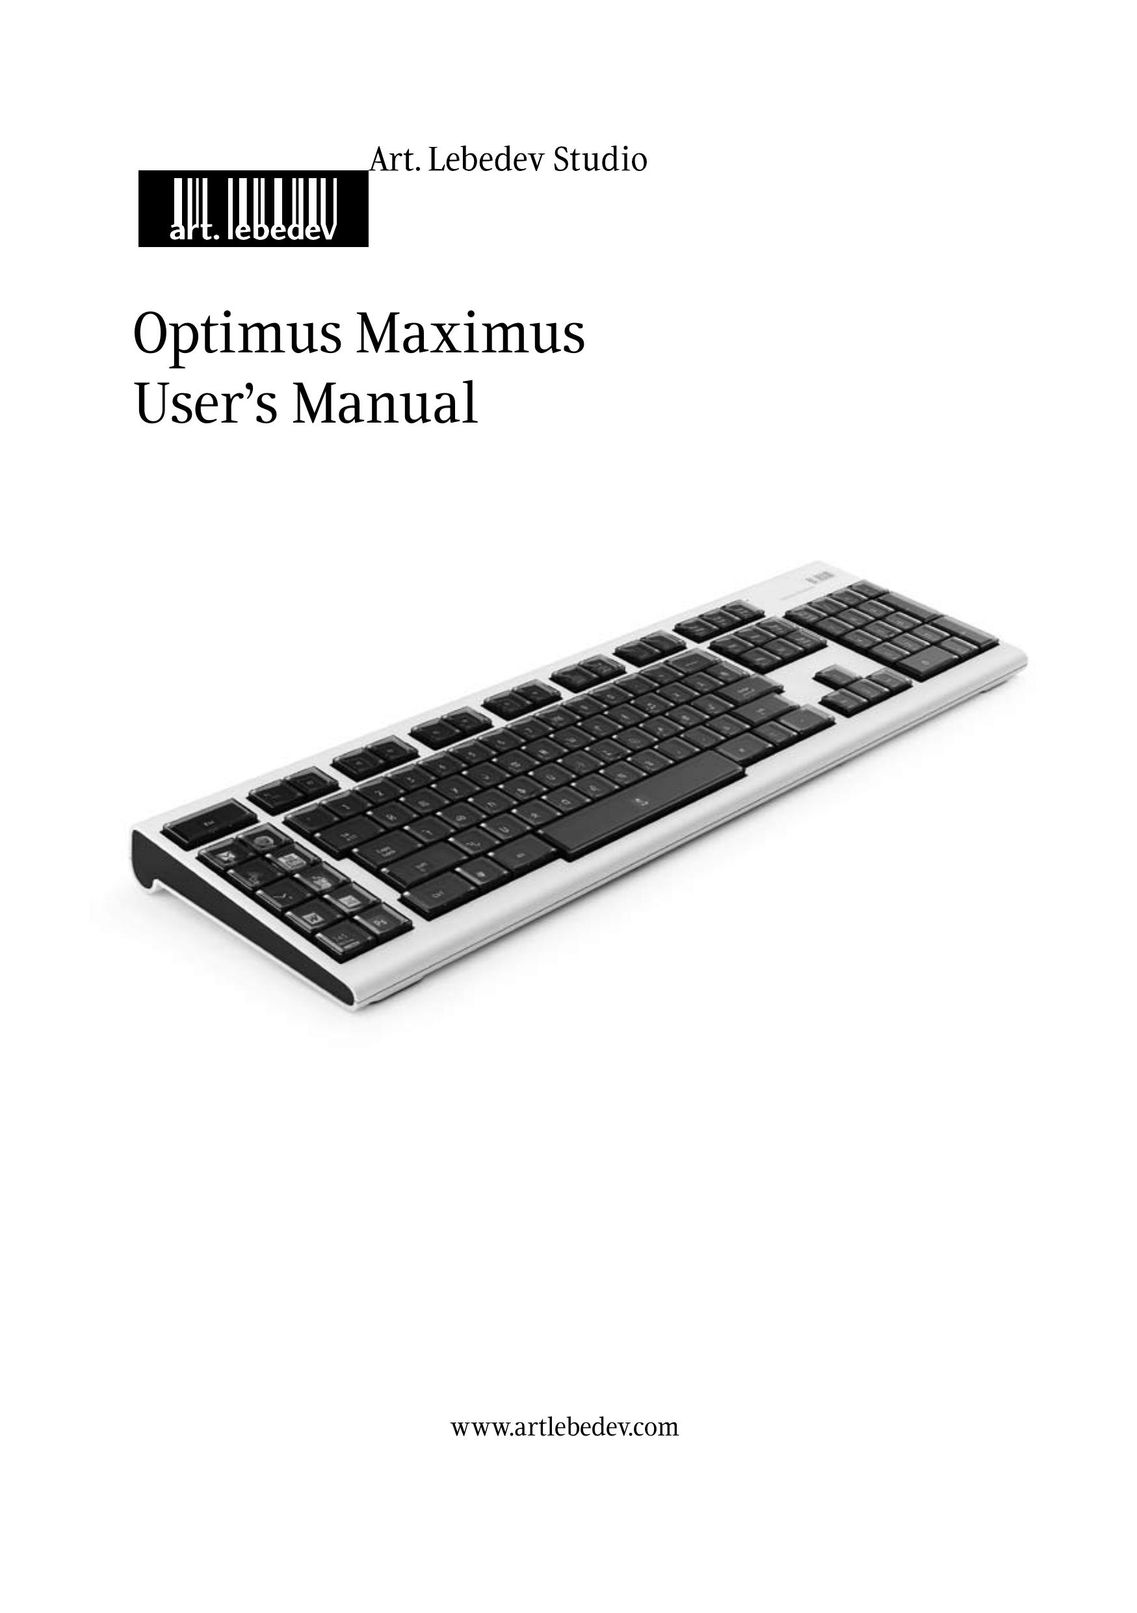 Radio Shack Keyboard Computer Keyboard User Manual